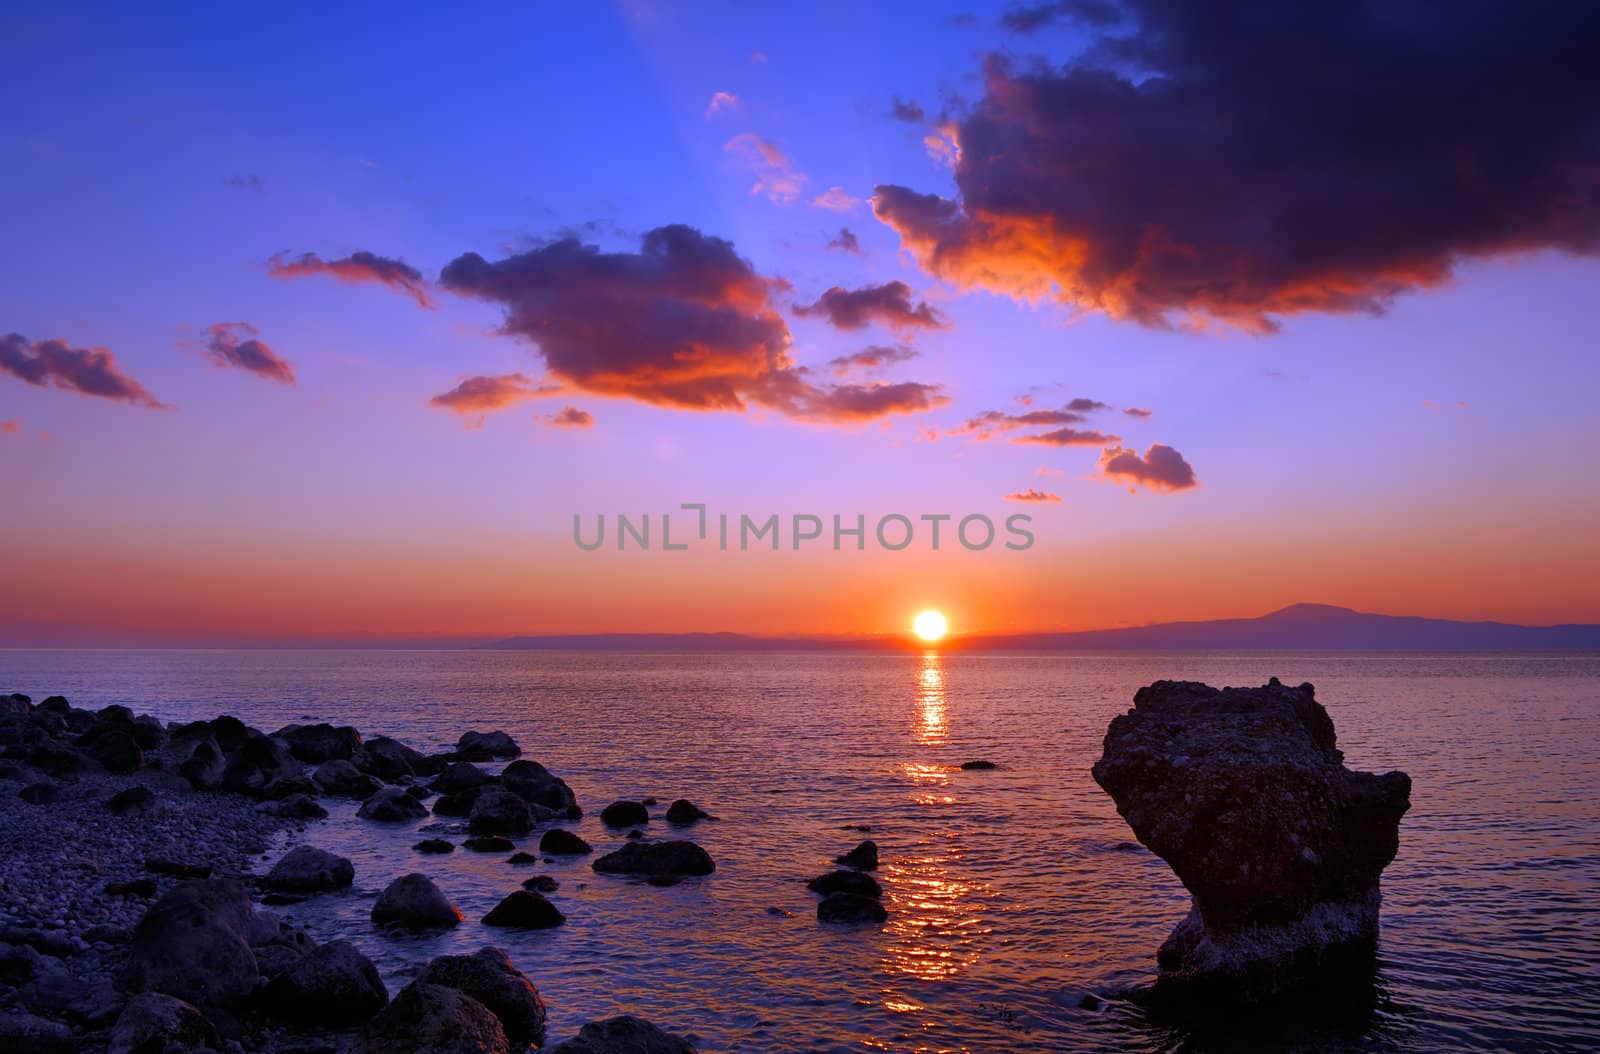 Sunset over rocky beach by akarelias